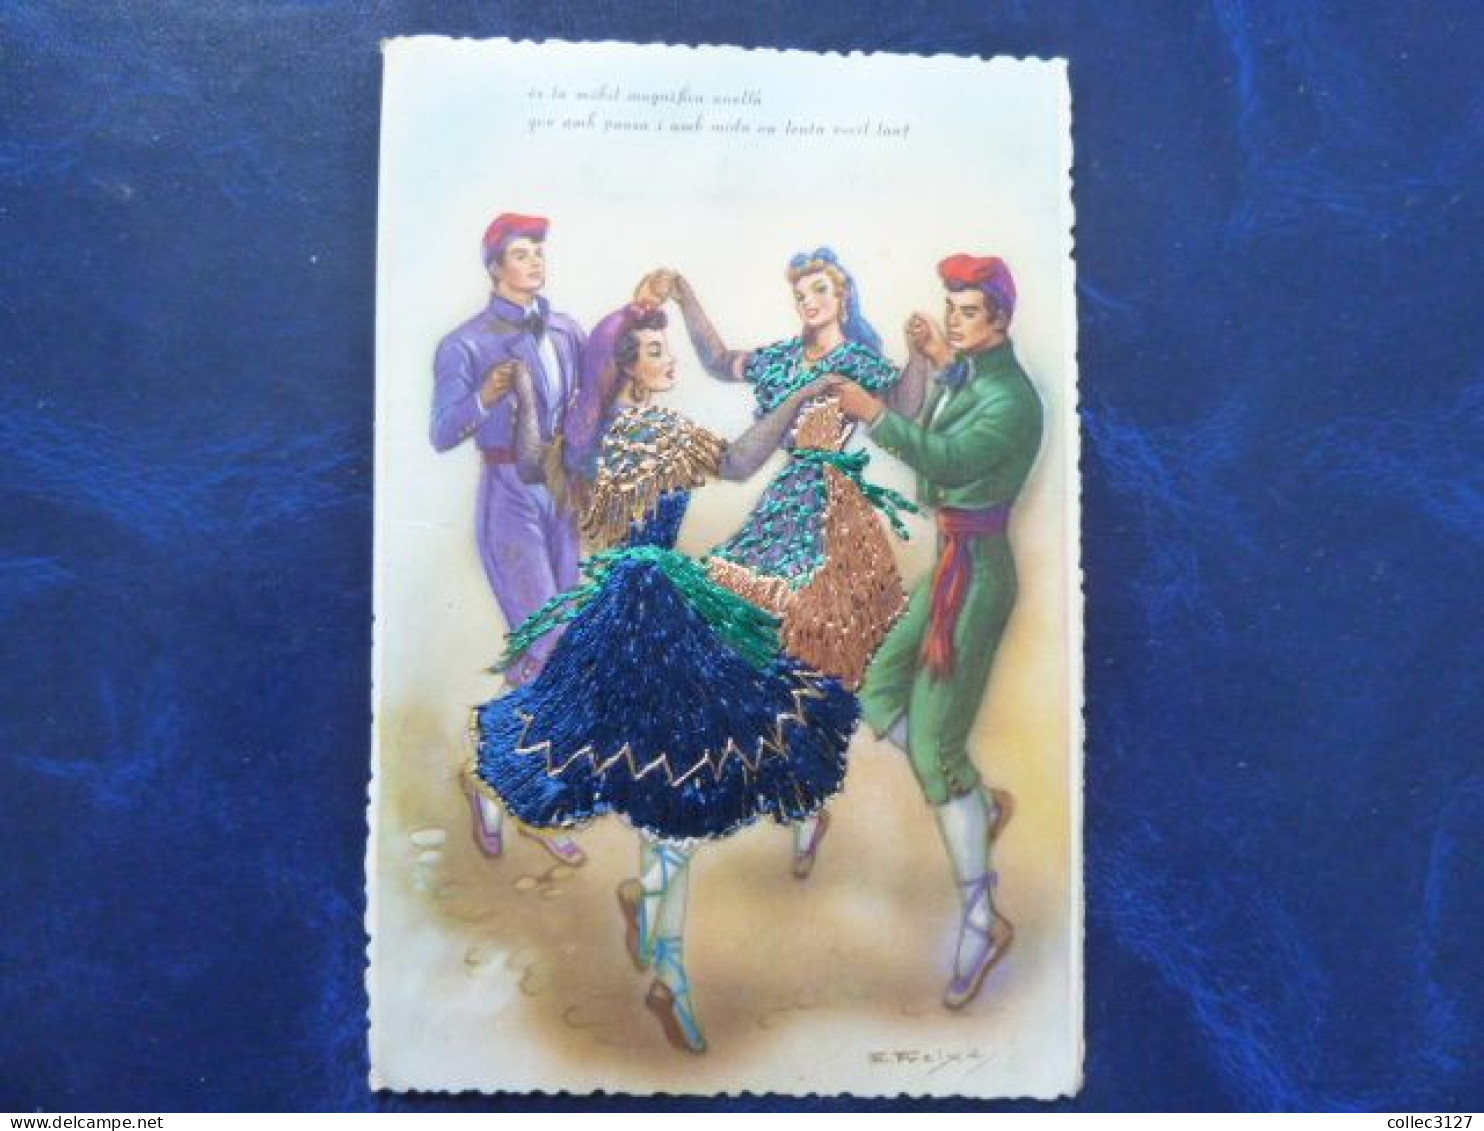 Lot de 7 cartes brodées sur le thème du Flamenco - Espagne - voir toutes les photos